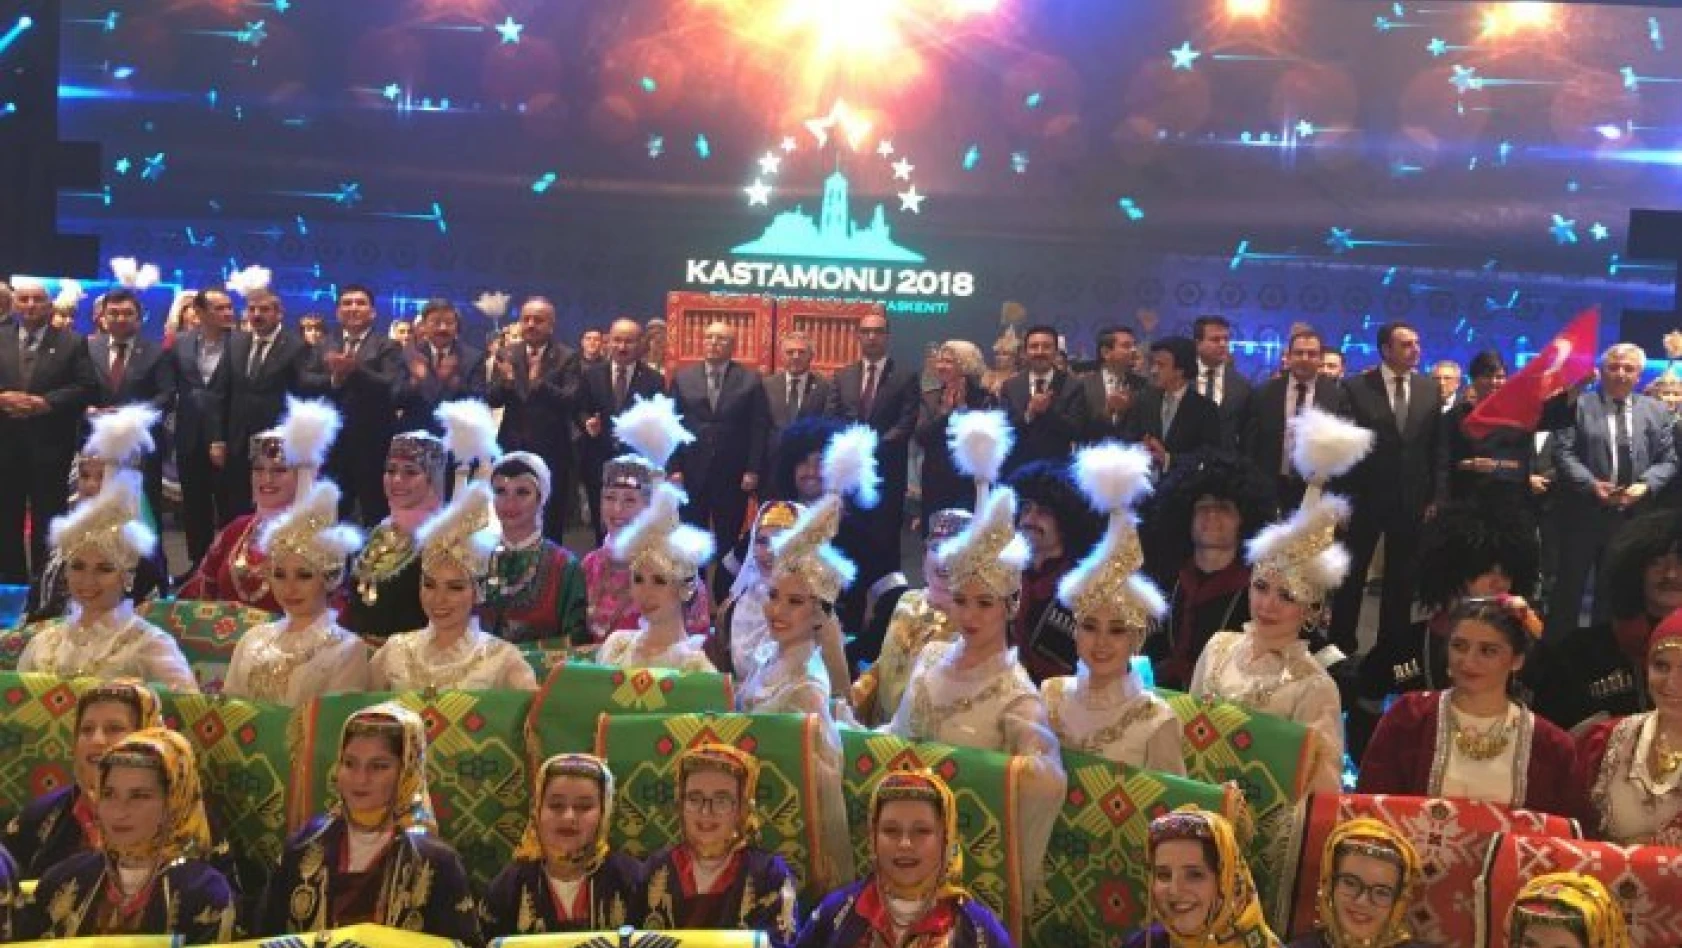 Kastamonu &quot2018 Türk Dünyası Kültür Başkenti" ünvanını devretti